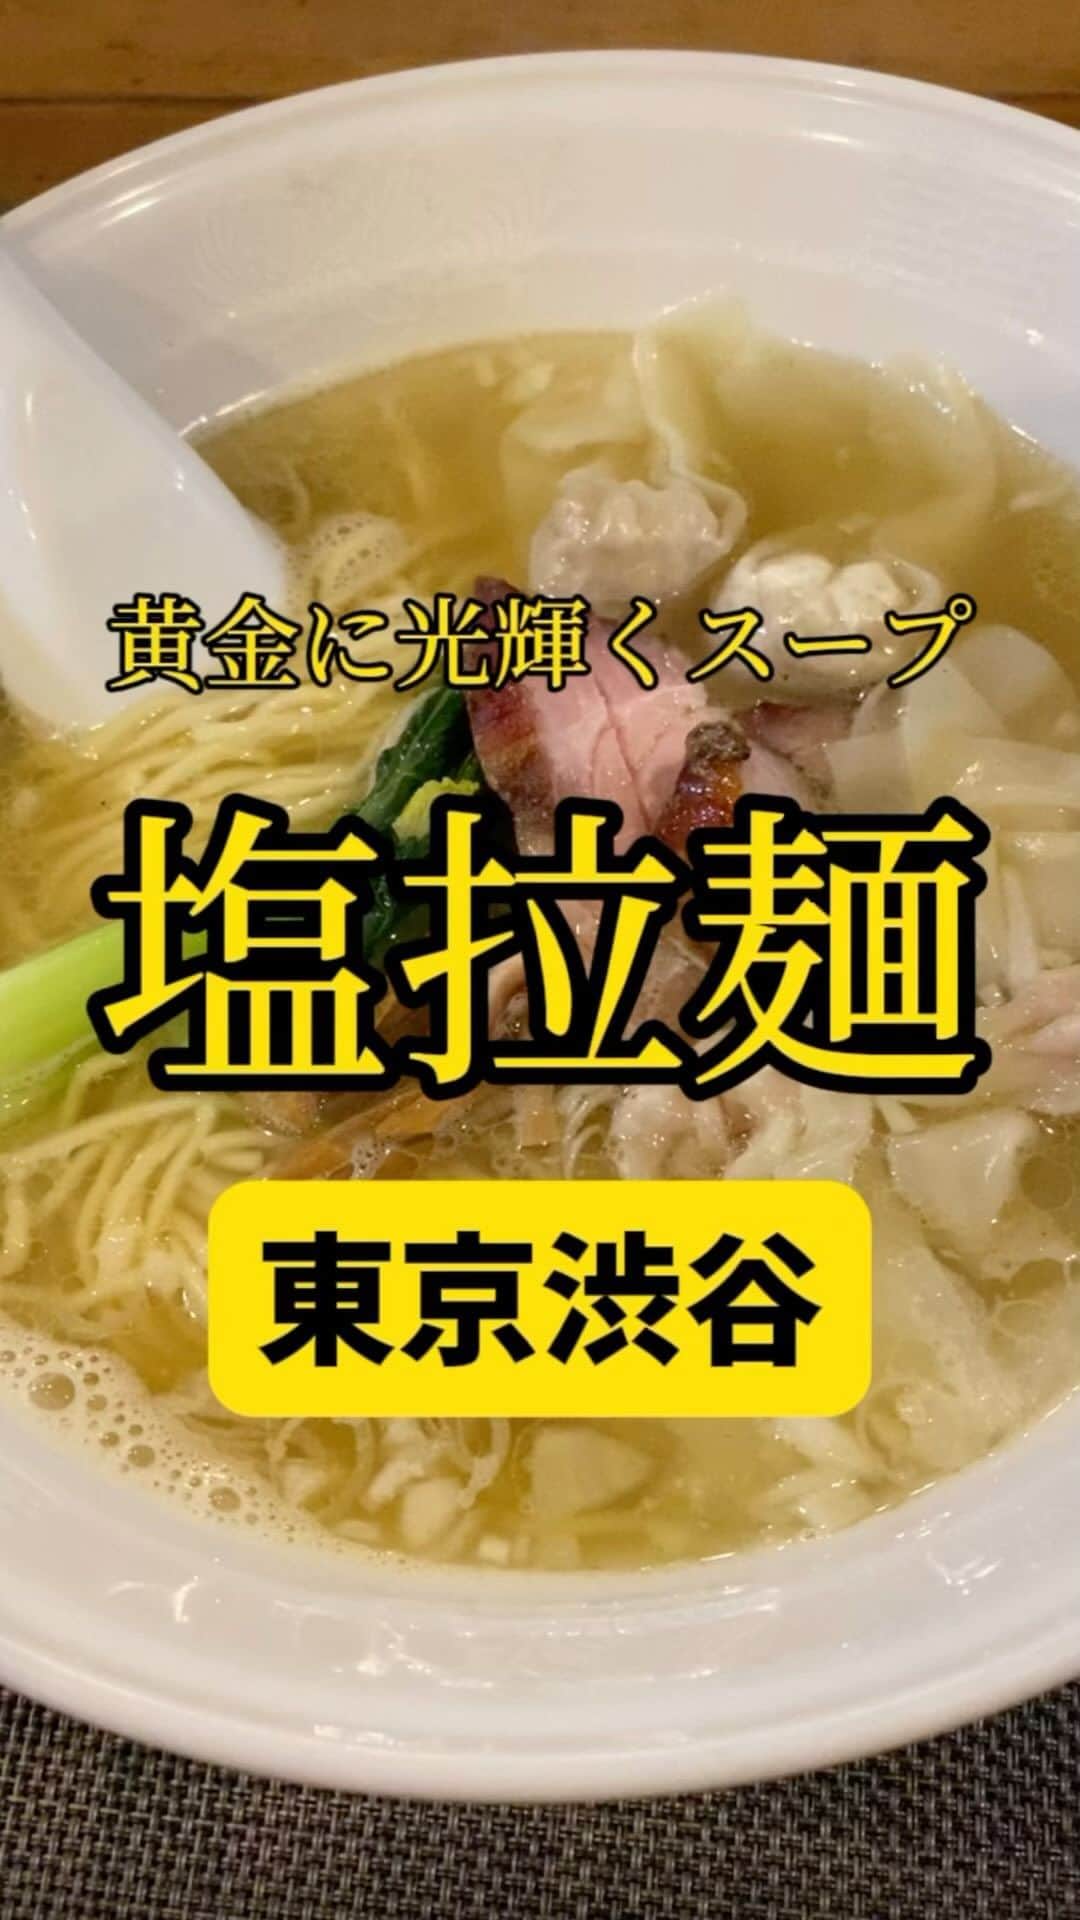 Mr.FISHEYE/魚眼男のインスタグラム：「スープが黄金に光り輝く塩ラーメン🍜東京/渋谷「らーめん 穀雨」  (美味しいお店など情報をなるべく早めに紹介するので @ryo_onoma をお願いします🙇‍♂️)  渋谷で塩ラーメンを食べるならここを挙げる。他があれば教えて欲しい。切実に知りたい。ただそこのお店がここのお店より美味しいか、自信を持って言えるか、聞きたい。結構難しいと思う。渋谷でよく行く麺類系のお店は道玄坂マンモスであそこは味のブレが本当になくてよく行く、特に辛つけ麺は秀逸だと思う。あのつけ麺スープは最初から辛いのを想定していると思うくらい辛い味付けに合っている。何か話が逸れすぎてしまった。ガッツリ食いたい時は道玄坂マンモス、身体に優しくさっぱり食いたいい時はこのらーめん 穀雨に行く。２大巨頭。いつもは醤油だがこの日は歯のこともあり塩。しかし最近醤油よりも塩の気分な時が多い。そういう時ないか。  【らーめん 穀雨】 📍東京都渋谷区桜丘町29-5 石島ビル 1F 📲03-3770-7709 🈺[月～金]12:00～15:00(L.O.)、18:00～20:00(L.O.) [土]12:00～15:00(L.O.) 定休日：第1・3土曜日、日曜日、祝日 🚶‍♂️渋谷駅から406m 🗒️頼んだメニュー：塩ラーメンワンタン5個  #渋谷グルメ #渋谷ランチ #渋谷ディナー #塩ラーメン #ラーメン #ラーメン屋 #ラーメン部 #ラーメンインスタグラマー #ラーメン倶楽部 #ラーメンパトロール #ラーメン大好き #ラーメン好きな人と繋がりたい #ラーメン巡り #ラーメン好き #らーめん #らーめん部 #らーめん大好き #らーめん好きな人と繋がりたい #ワンタン」